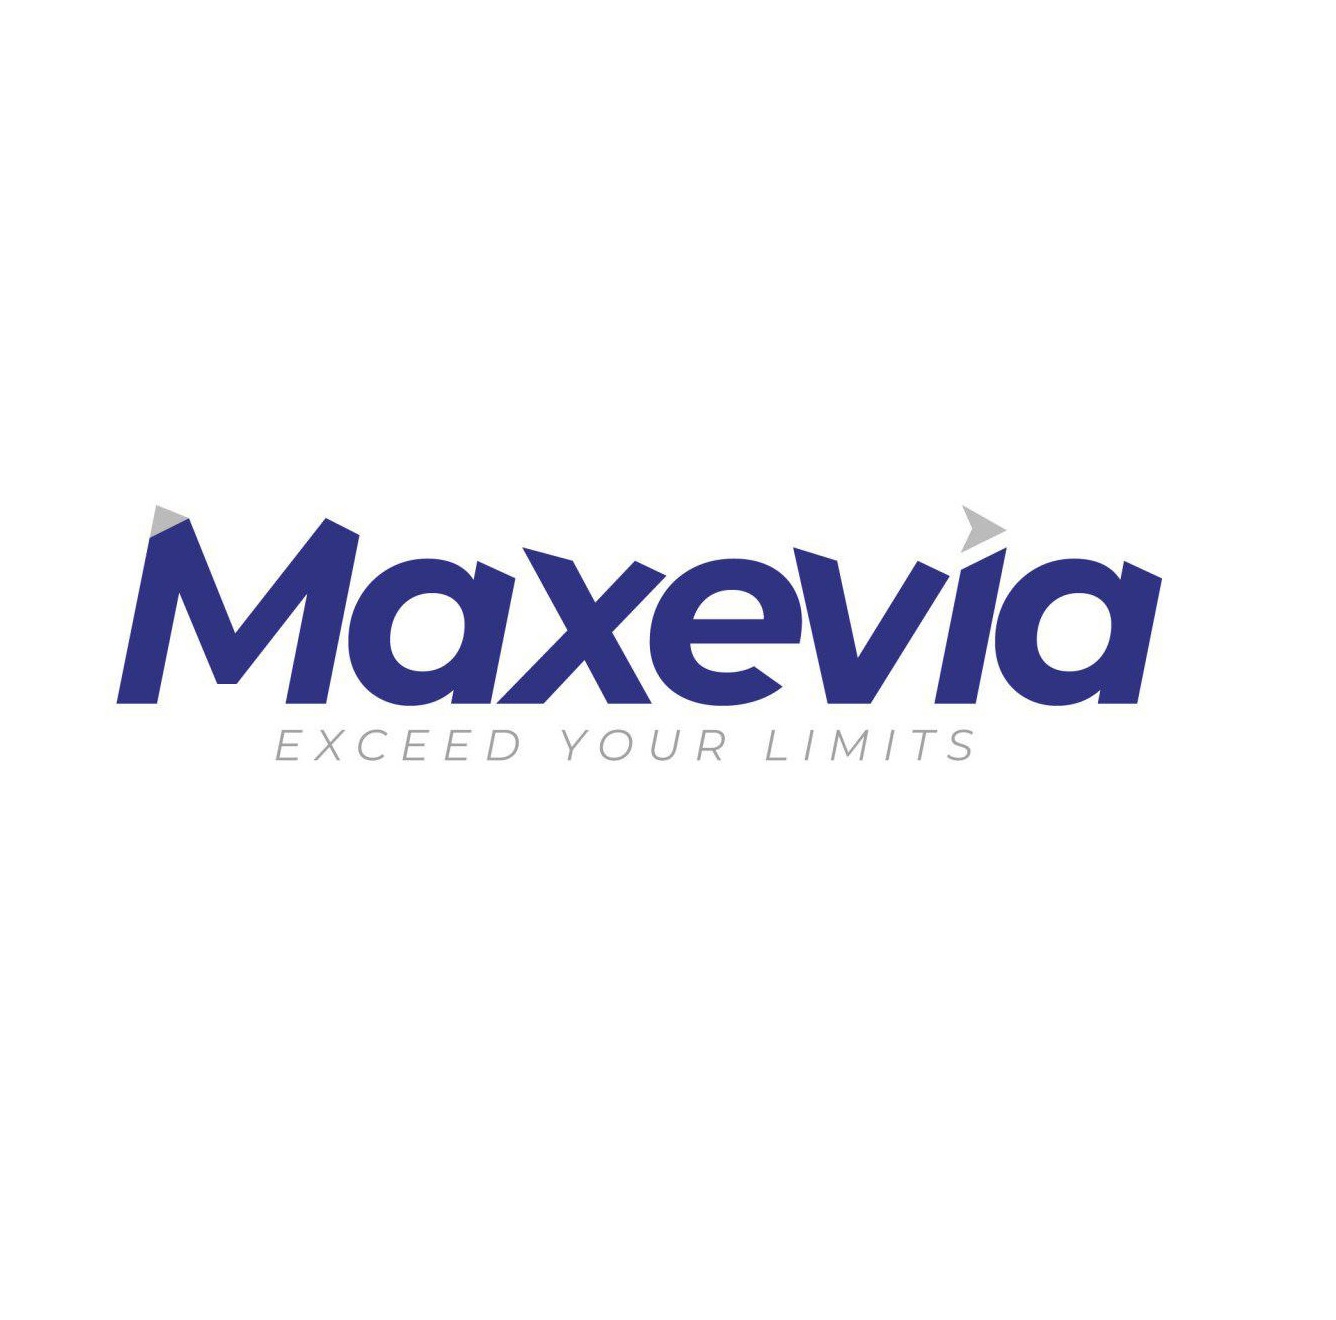 Maxevia Company